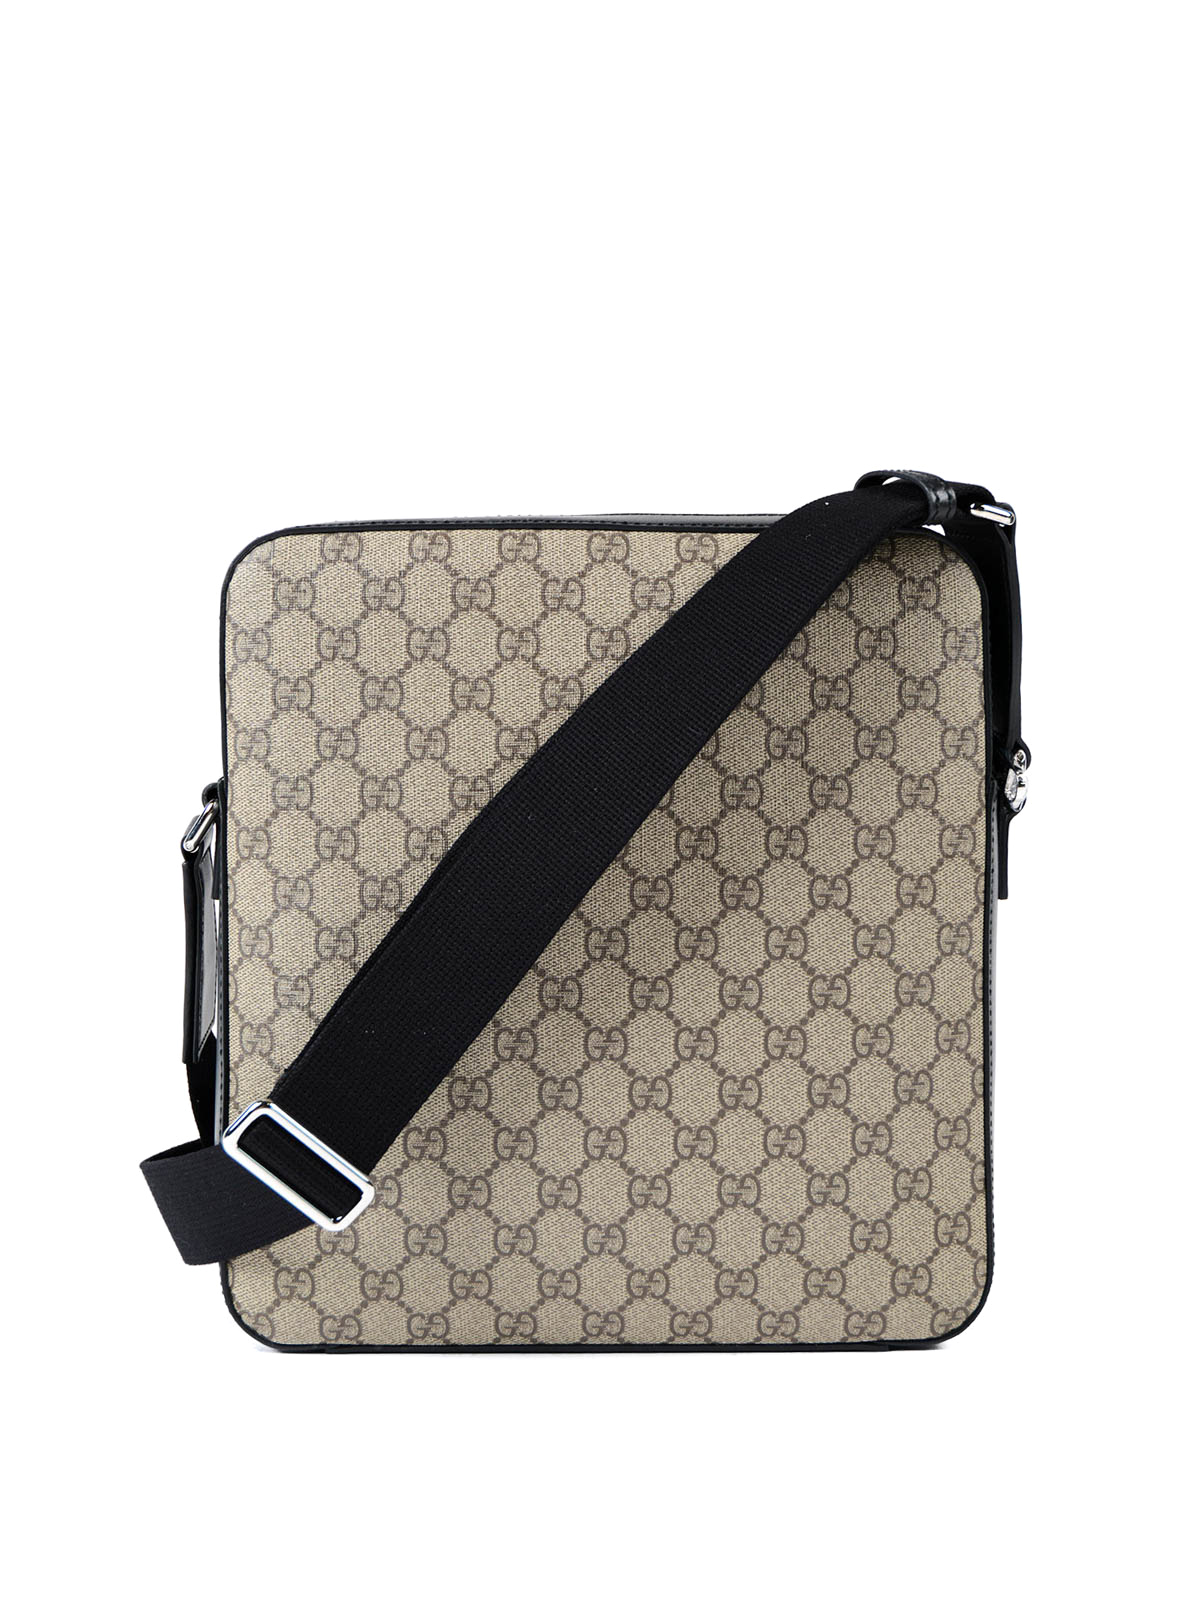 Shoulder bags - GG Supreme canvas bag - 473878K5RLN9769